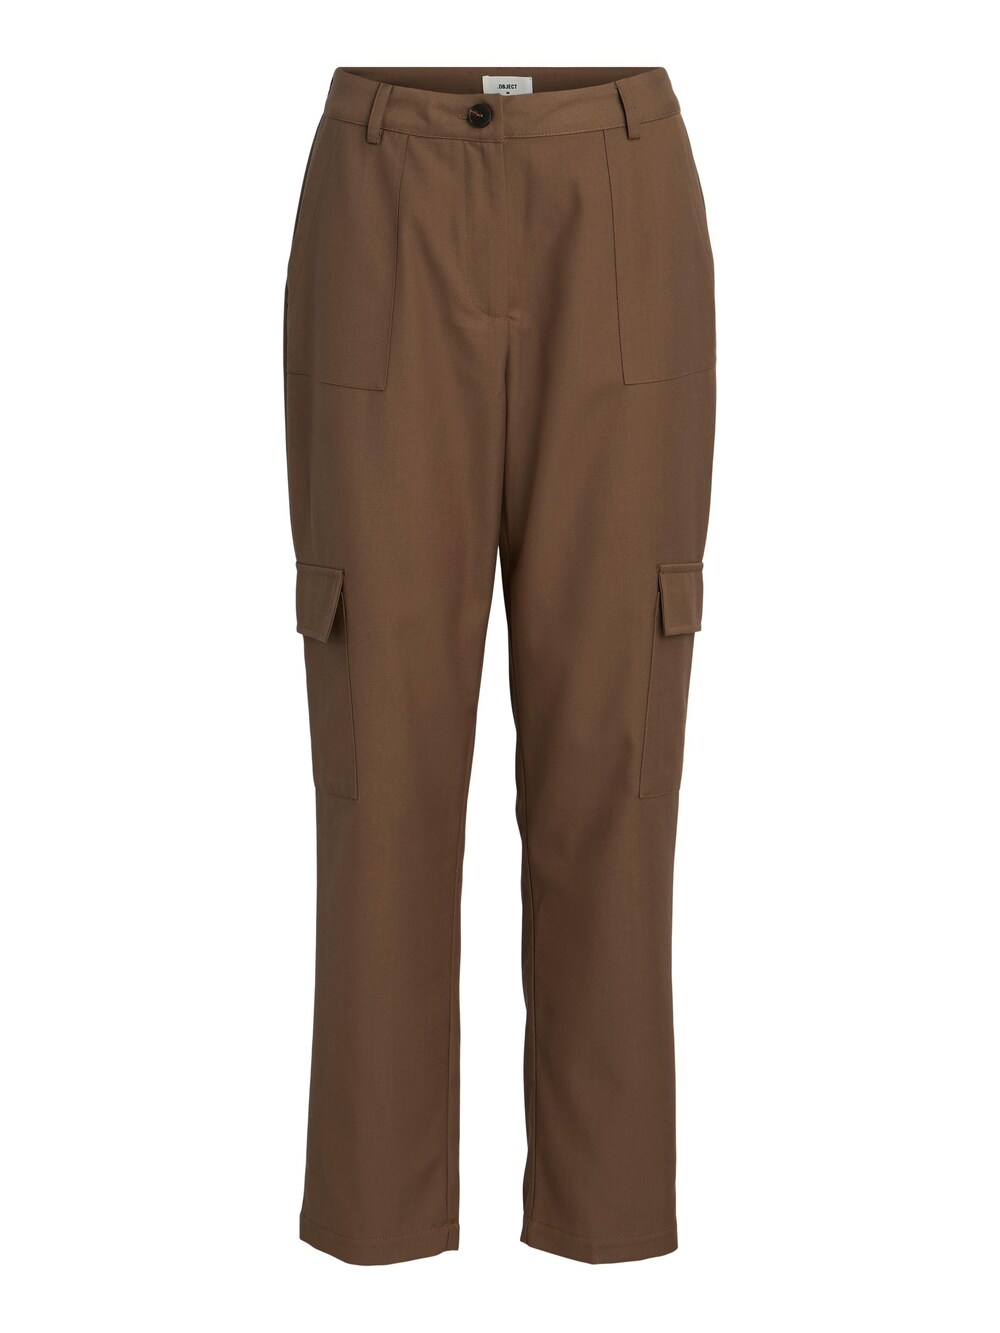 Обычные брюки-карго Object Andrea, коричневый обычные брюки карго camp david серо коричневый